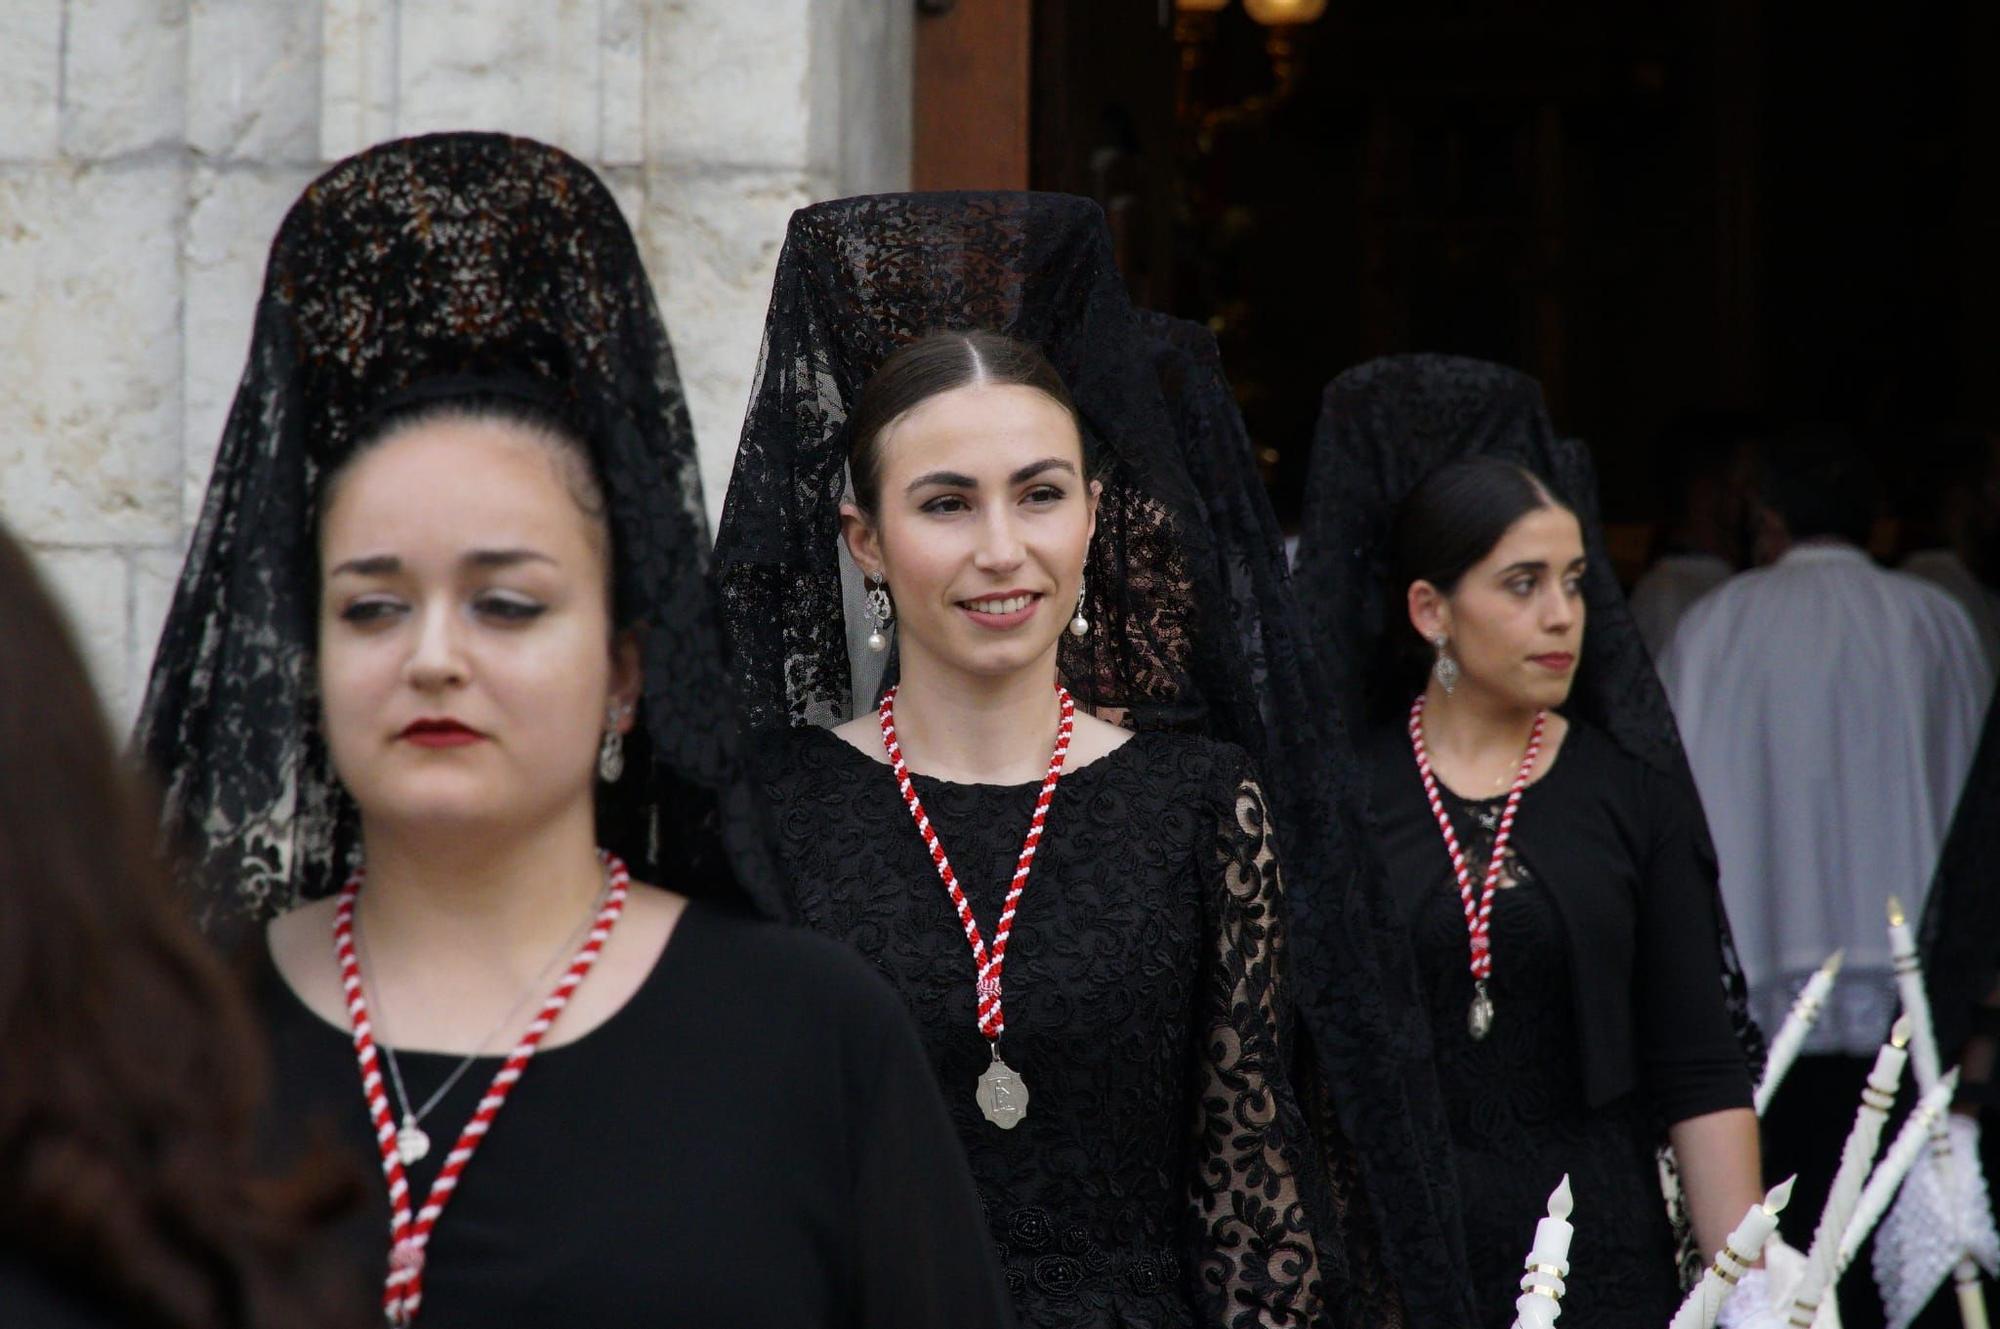 Las mejores imágenes de la procesión de Santa Quitèria en Almassora